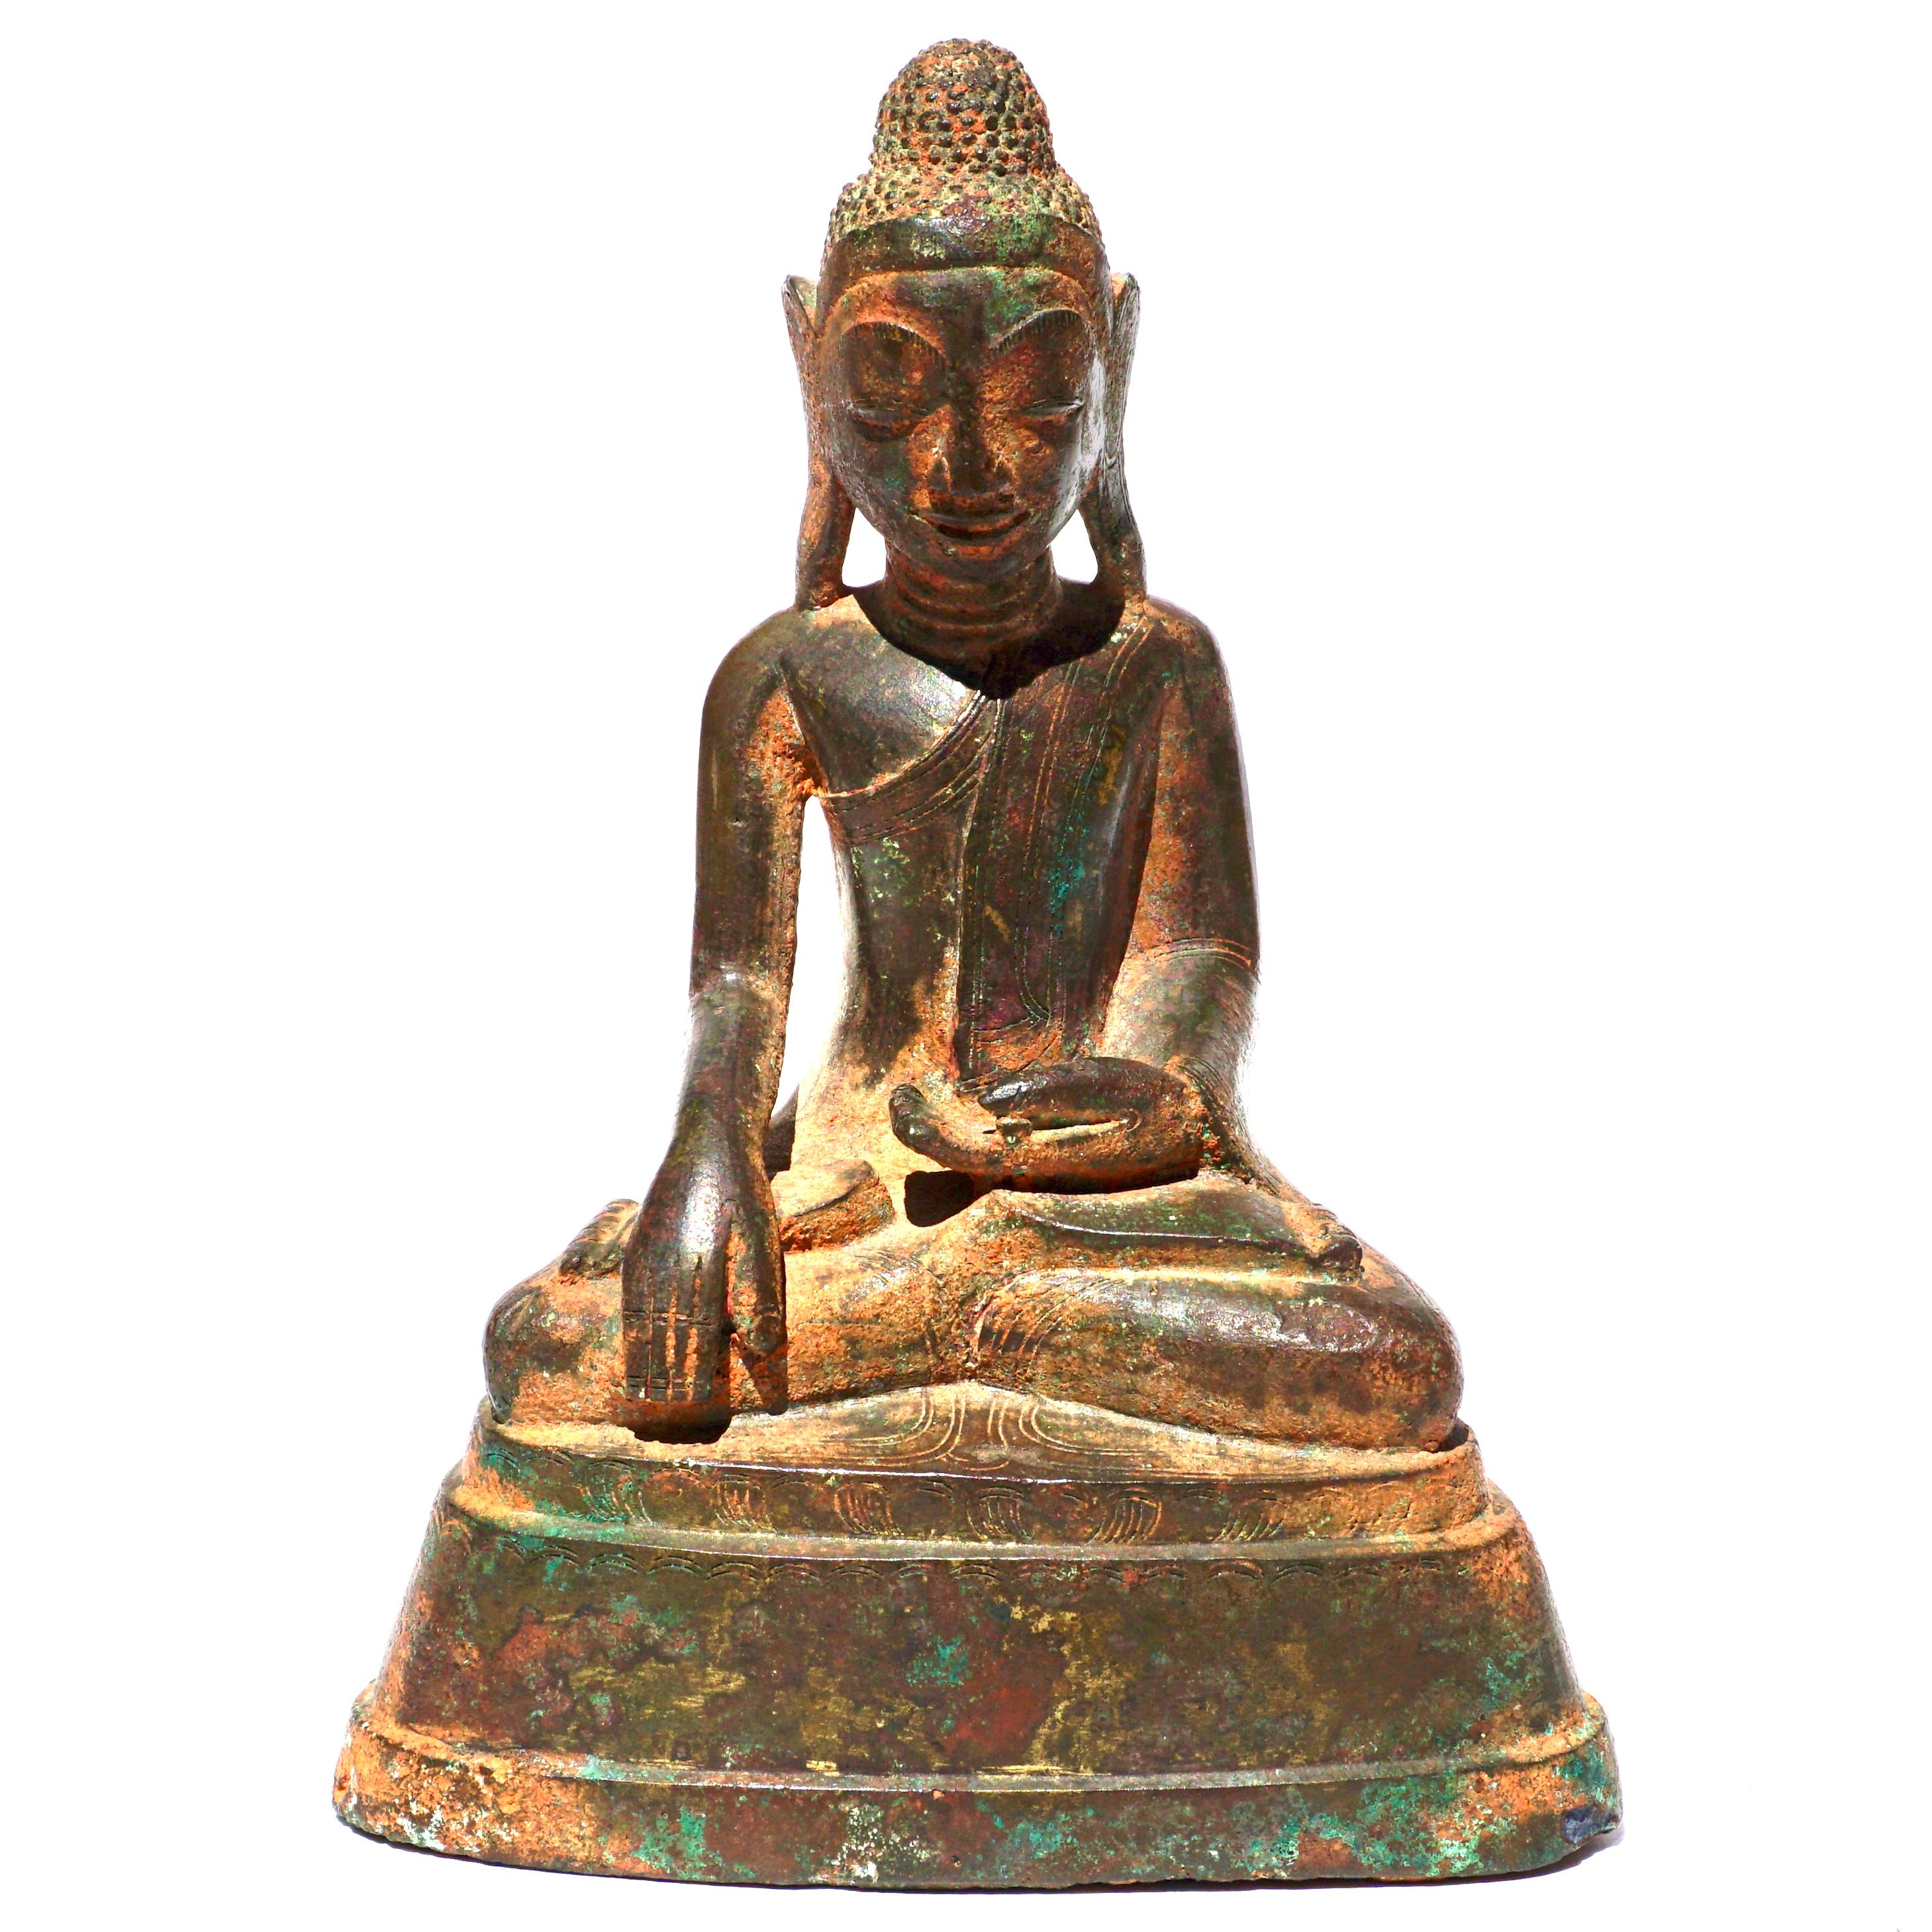 Bouddha khmer en bronze
Cambodge, 17e/18e siècle 
Sculpture en cuivre et bronze représentant un Bouddha assis avec des traces de dorure. Écritures au verso ; peut-être une prière.

Dimensions : Hauteur 6 1/4 pouces (15.8 cm)}

AVANTIQUES a